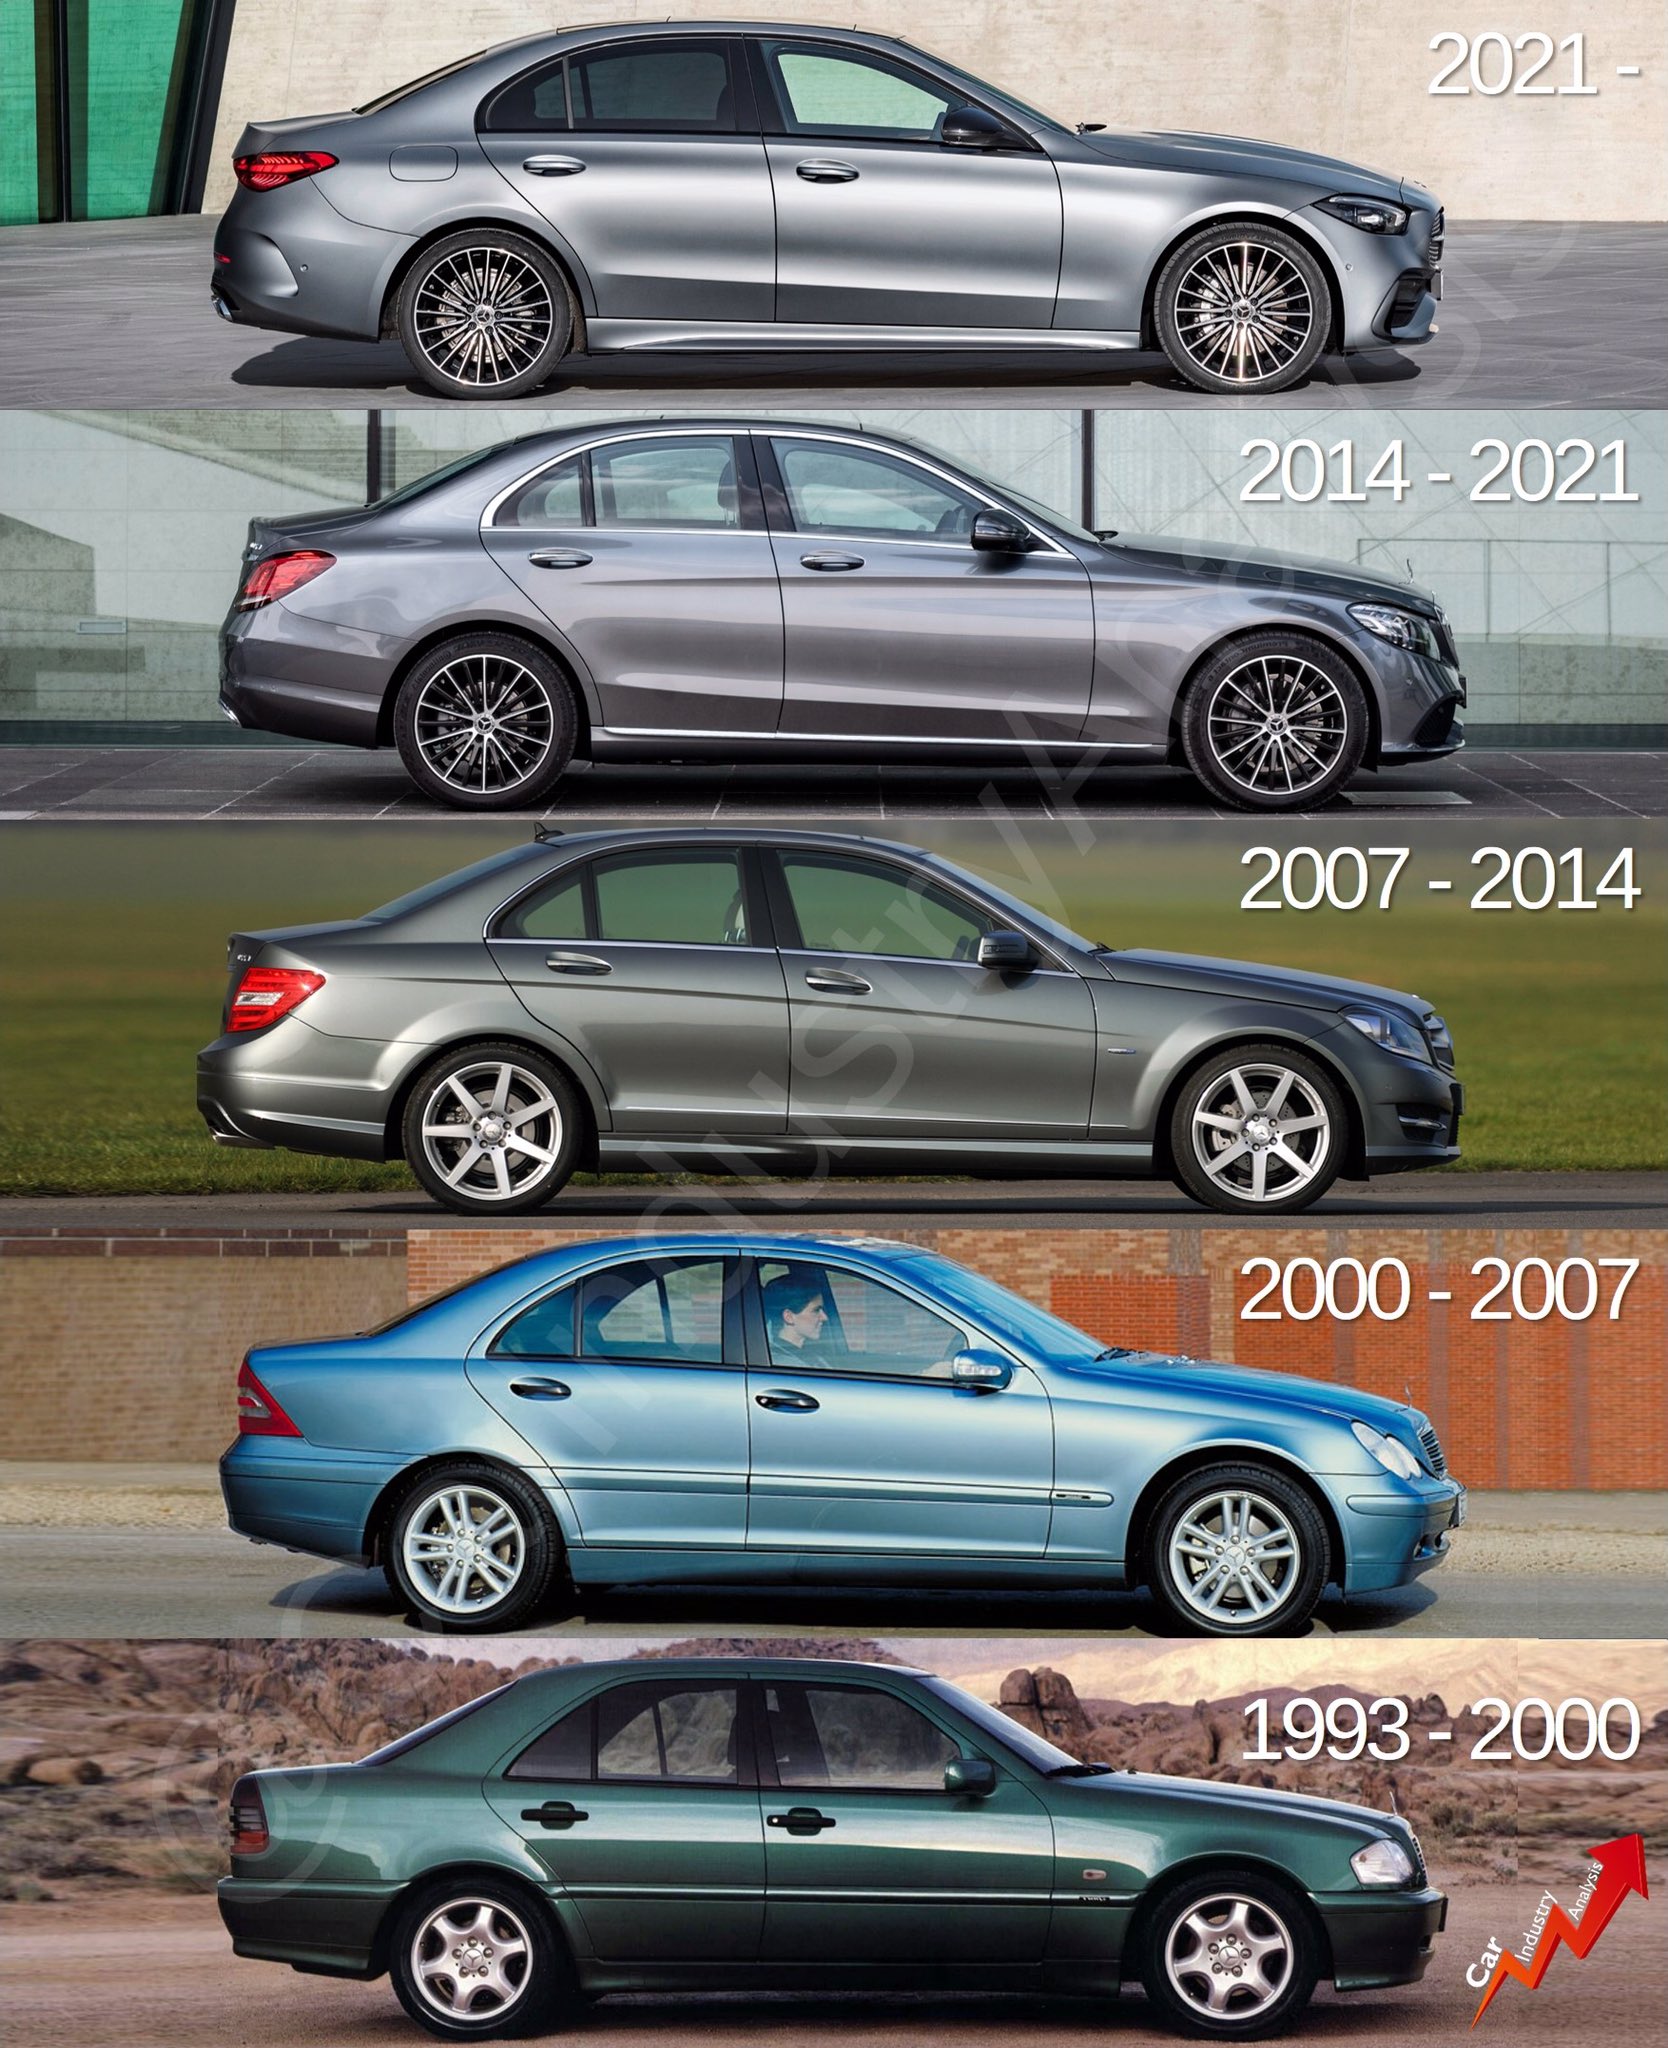 Mercedes C-Class Generations